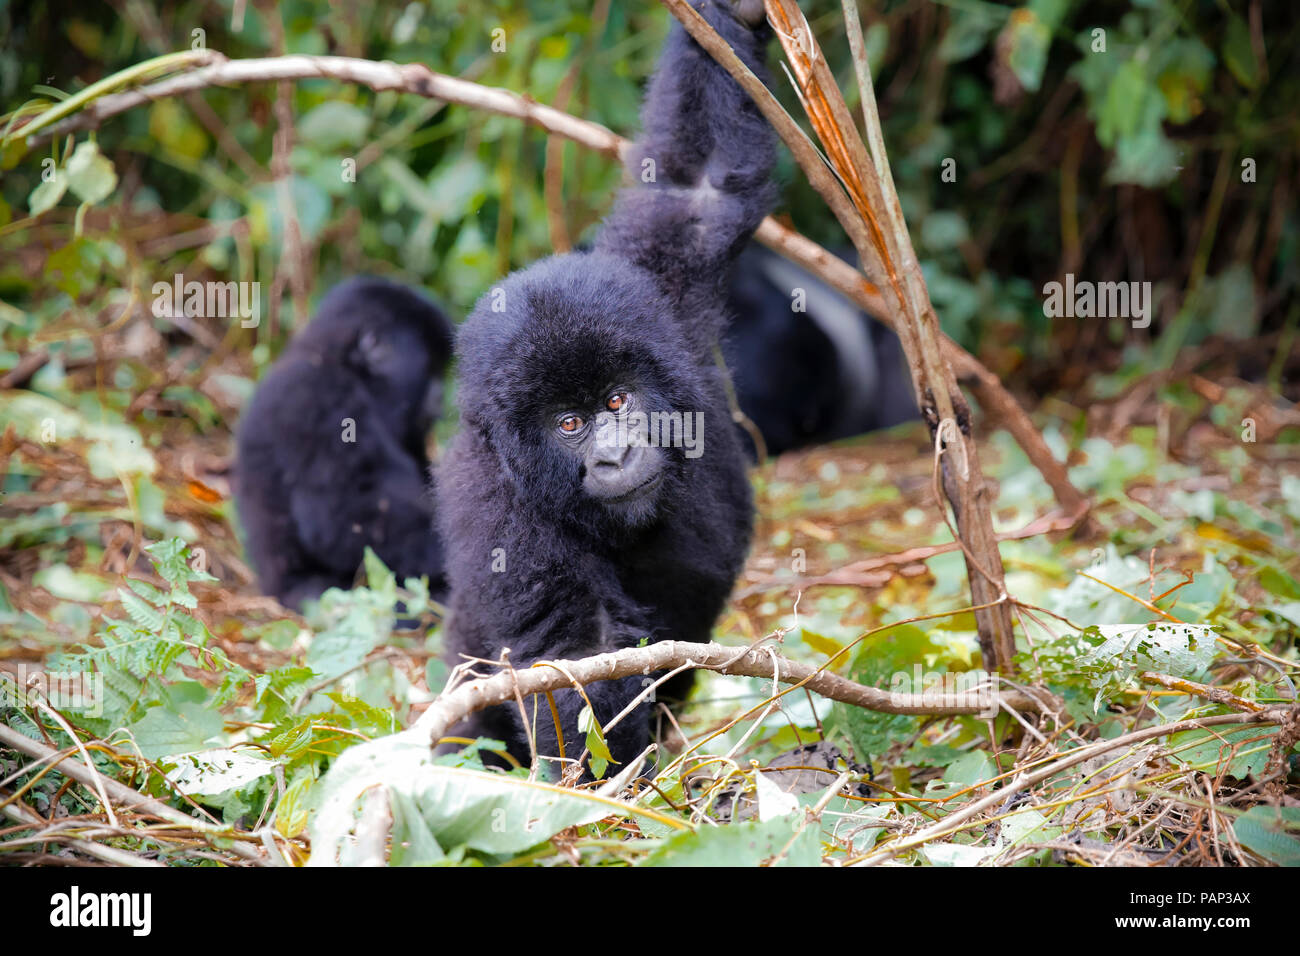 Afrique, République démocratique du Congo, les jeunes gorilles de montagne jouant dans la jungle Banque D'Images